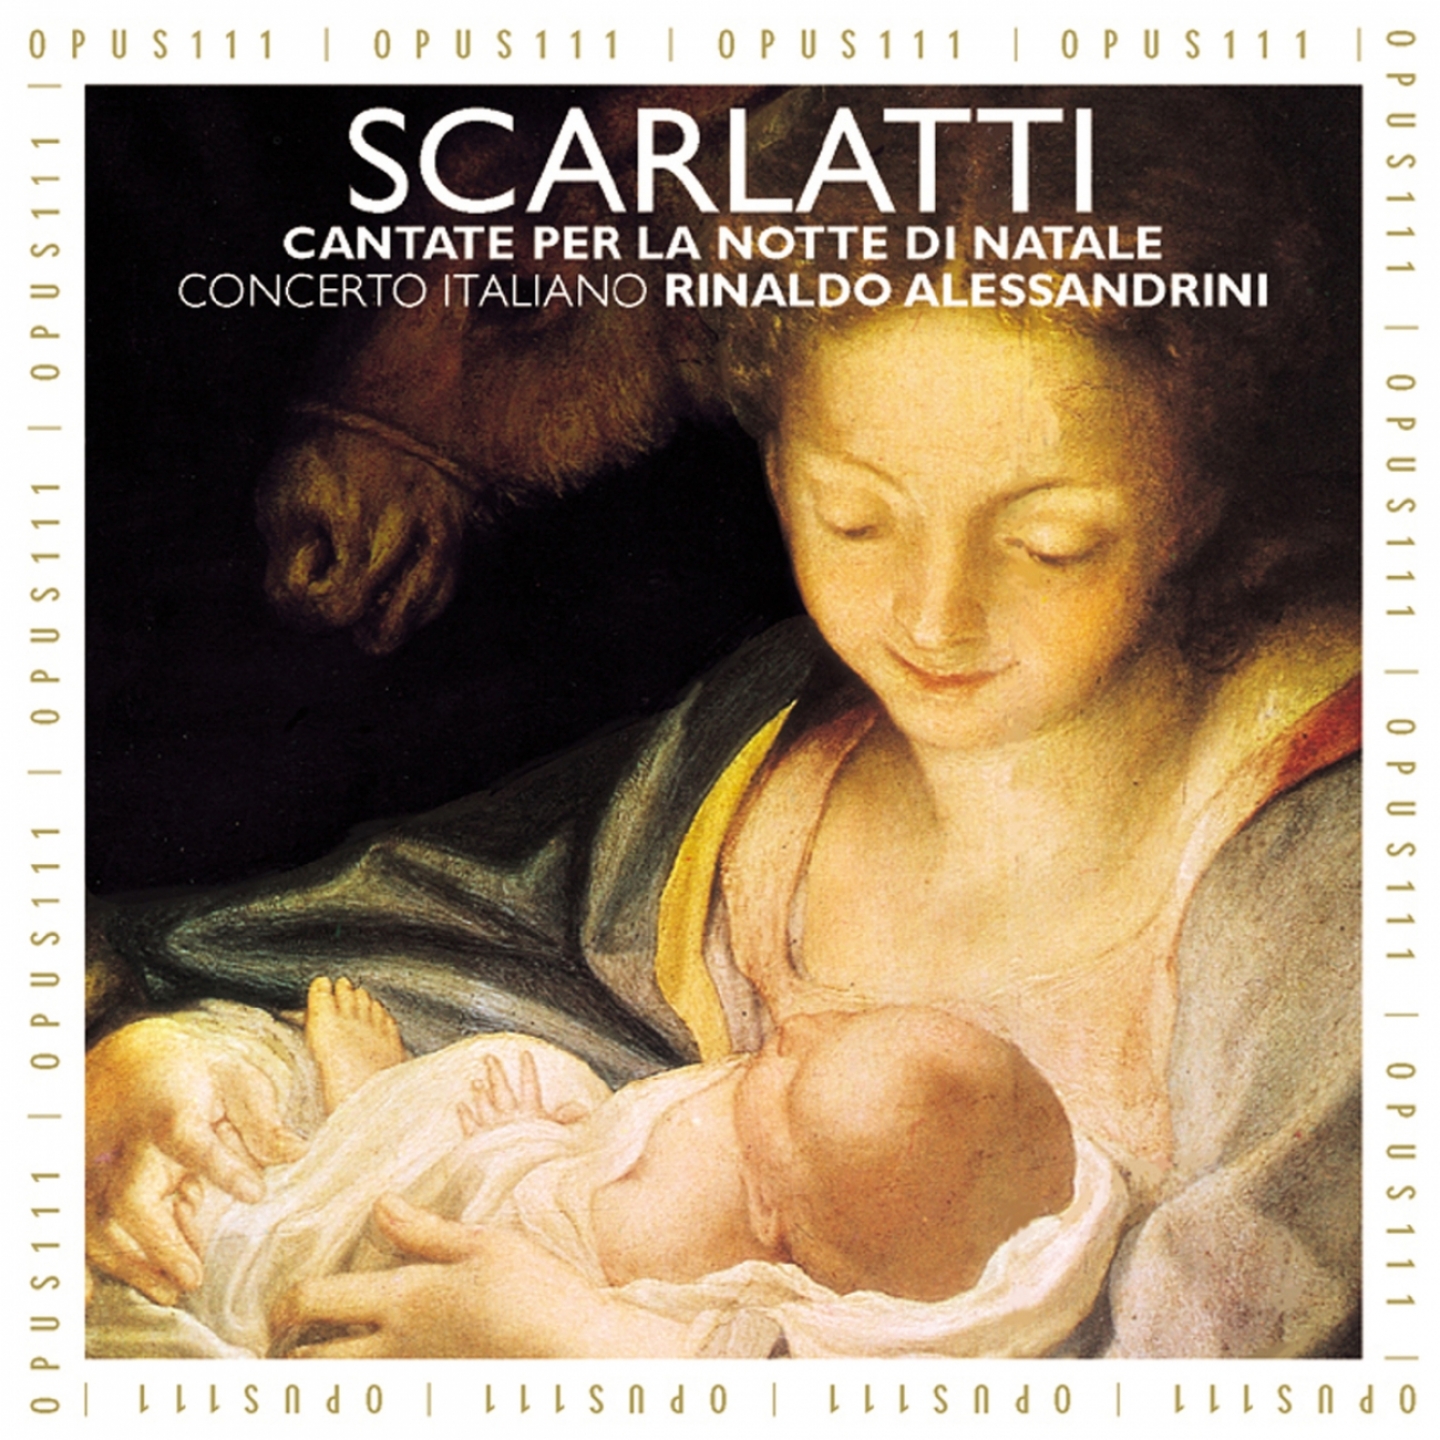 Cantata per la notte di Natale: No. 15, Recitativo for 2 Sopranos and Tenore, " In notte si gioconda" Daniele, Isaia, Ezechiele